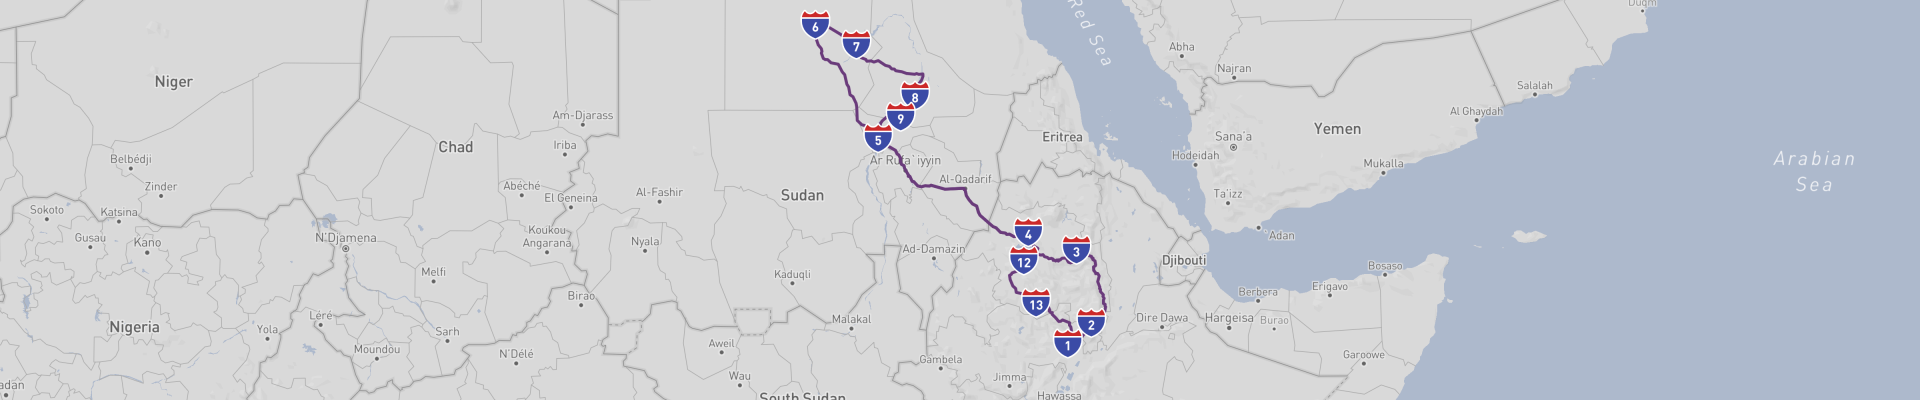 Viaje por carretera a Etiopía y Sudán